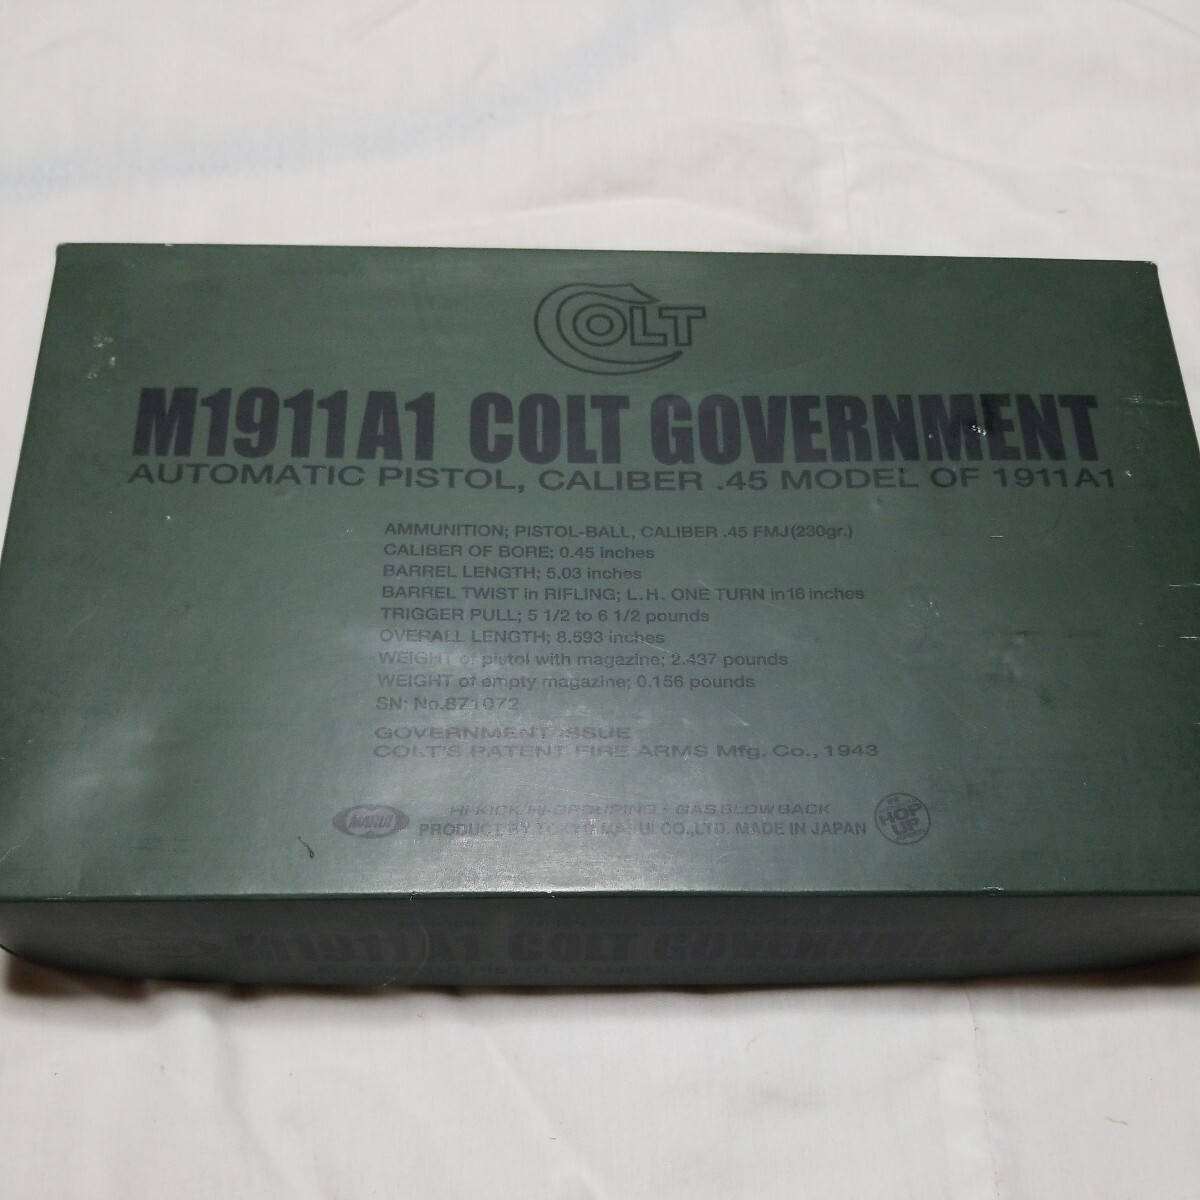  model gun round made air soft gun Colt M1911AI Government box equipped 